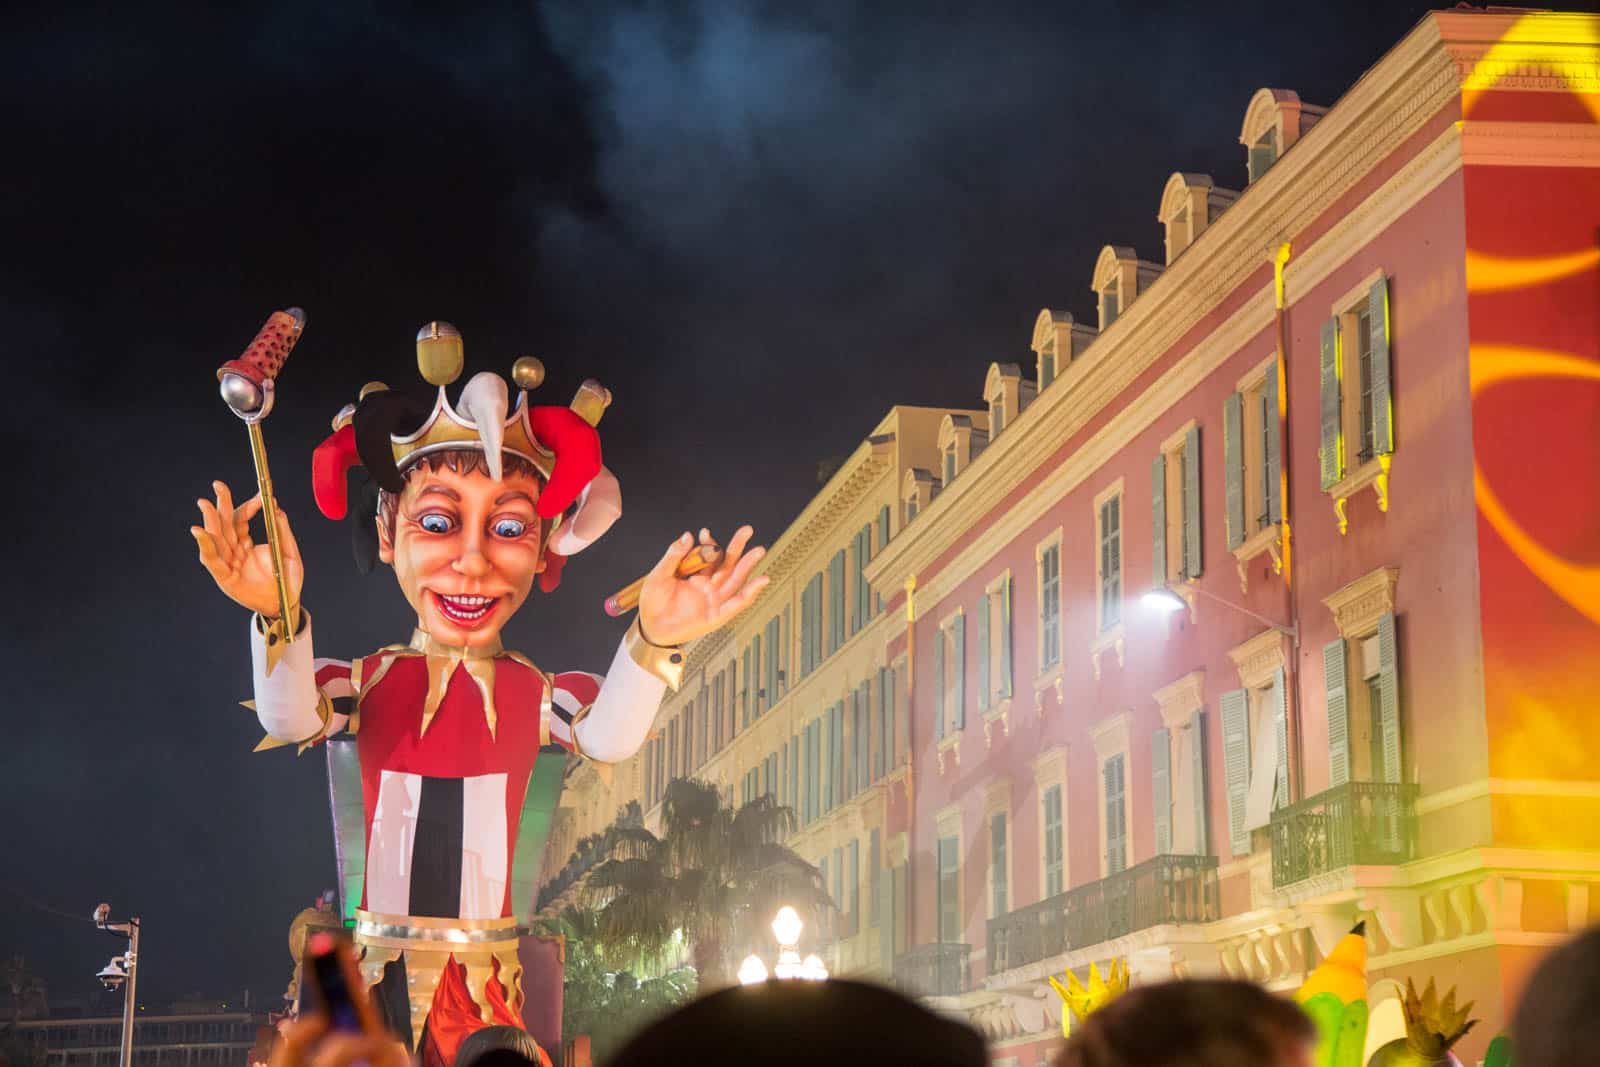 Découvrez le Carnaval de Nice : un spectacle haut en couleurs et en émotions